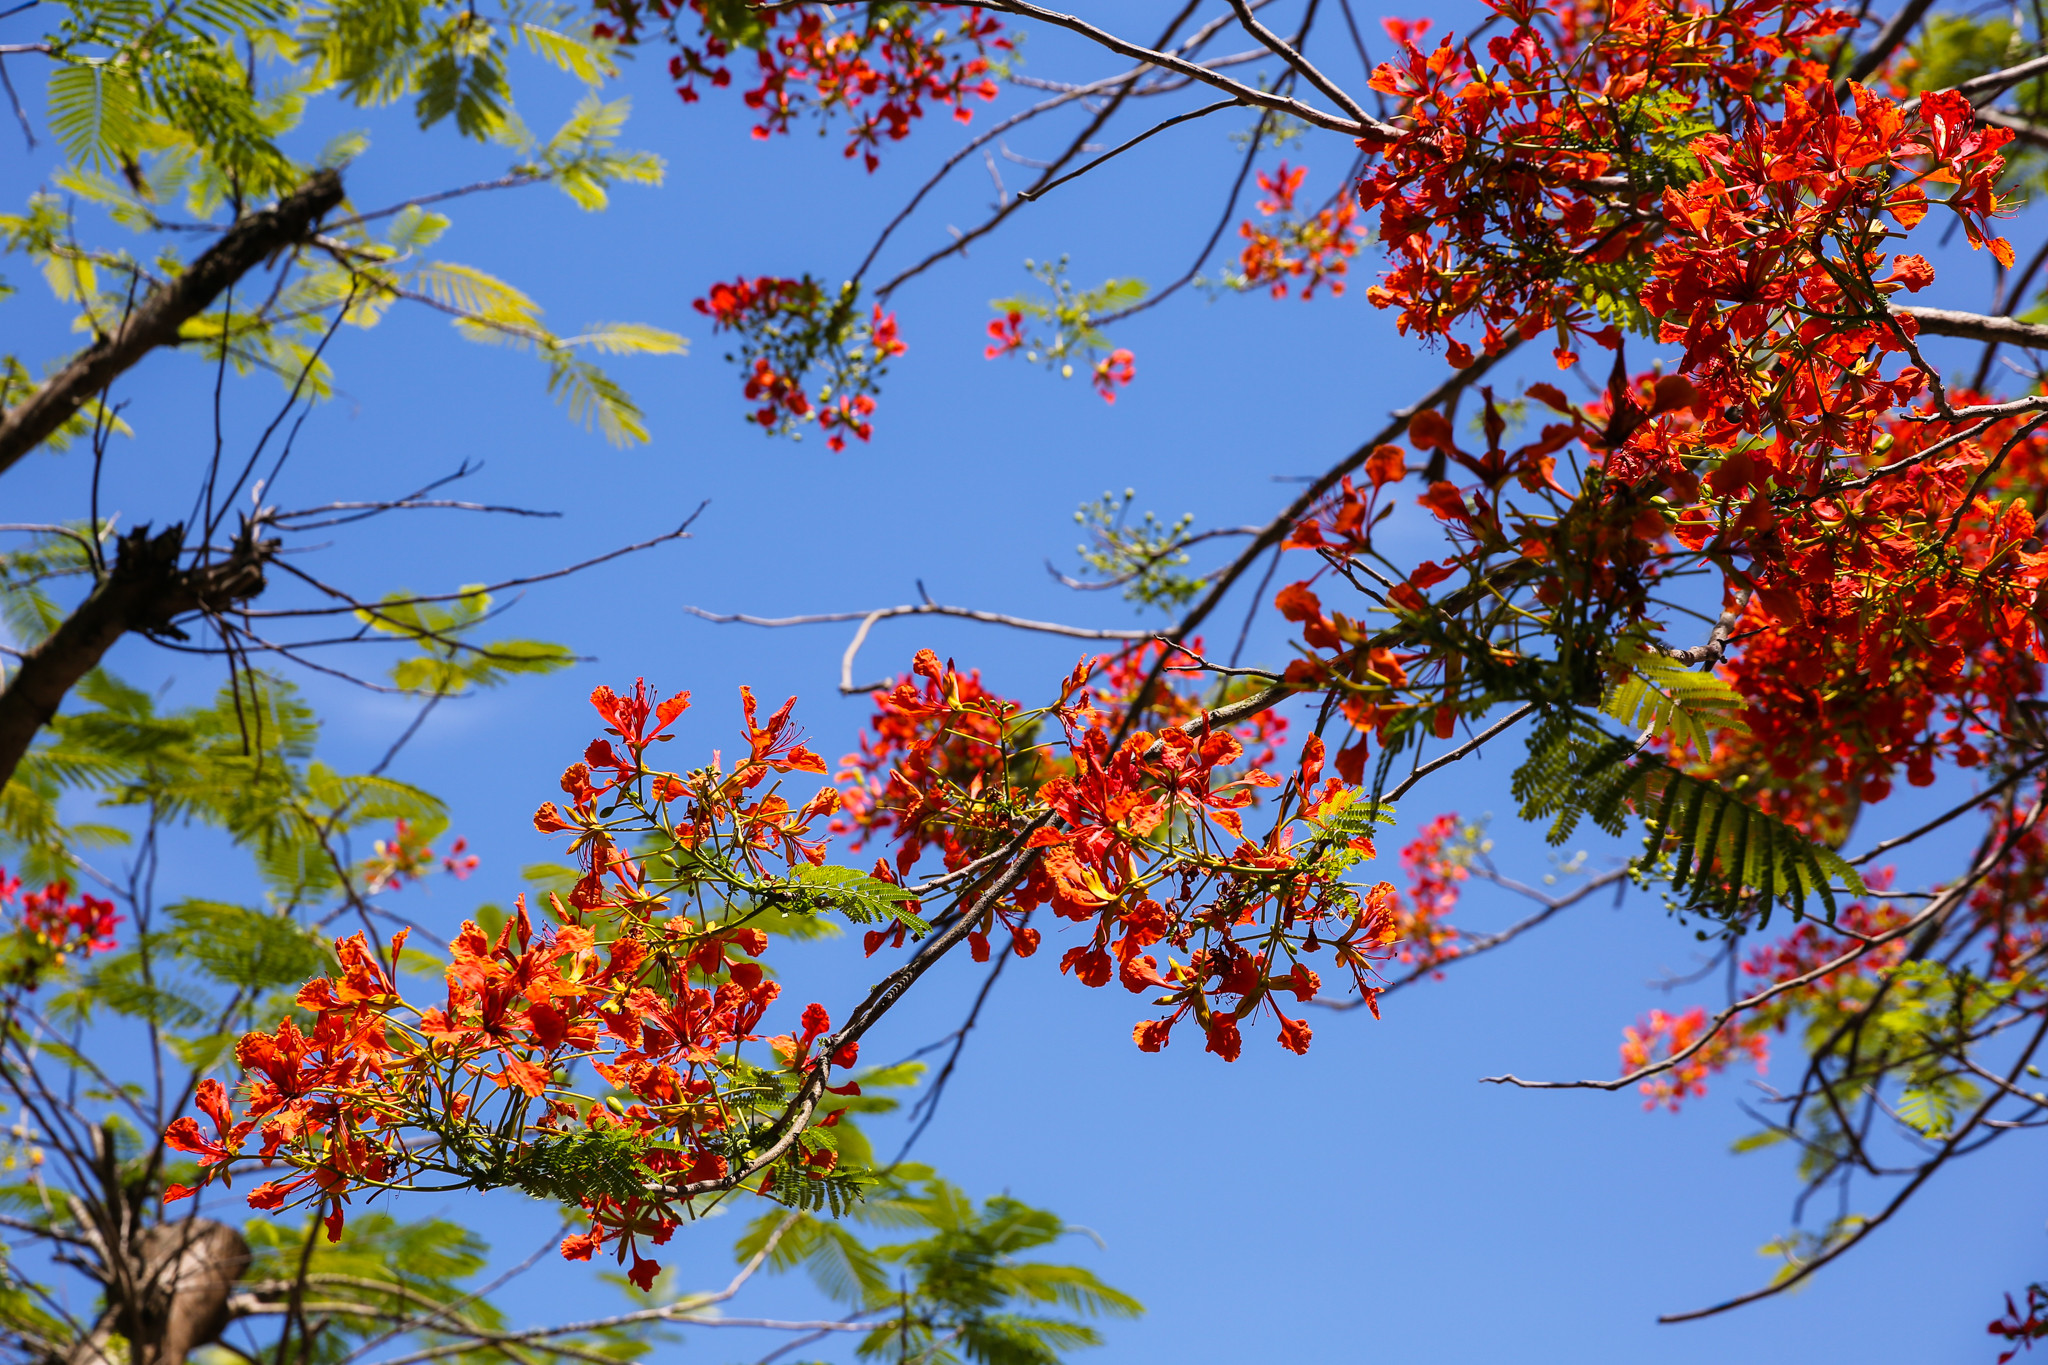 Nhờ được chăm sóc kỹ càng nên mỗi mùa hè về cây phượng ở đây vẫn xanh tốt bung nở những bông phượng đỏ thắm. Ảnh: Đức Anh